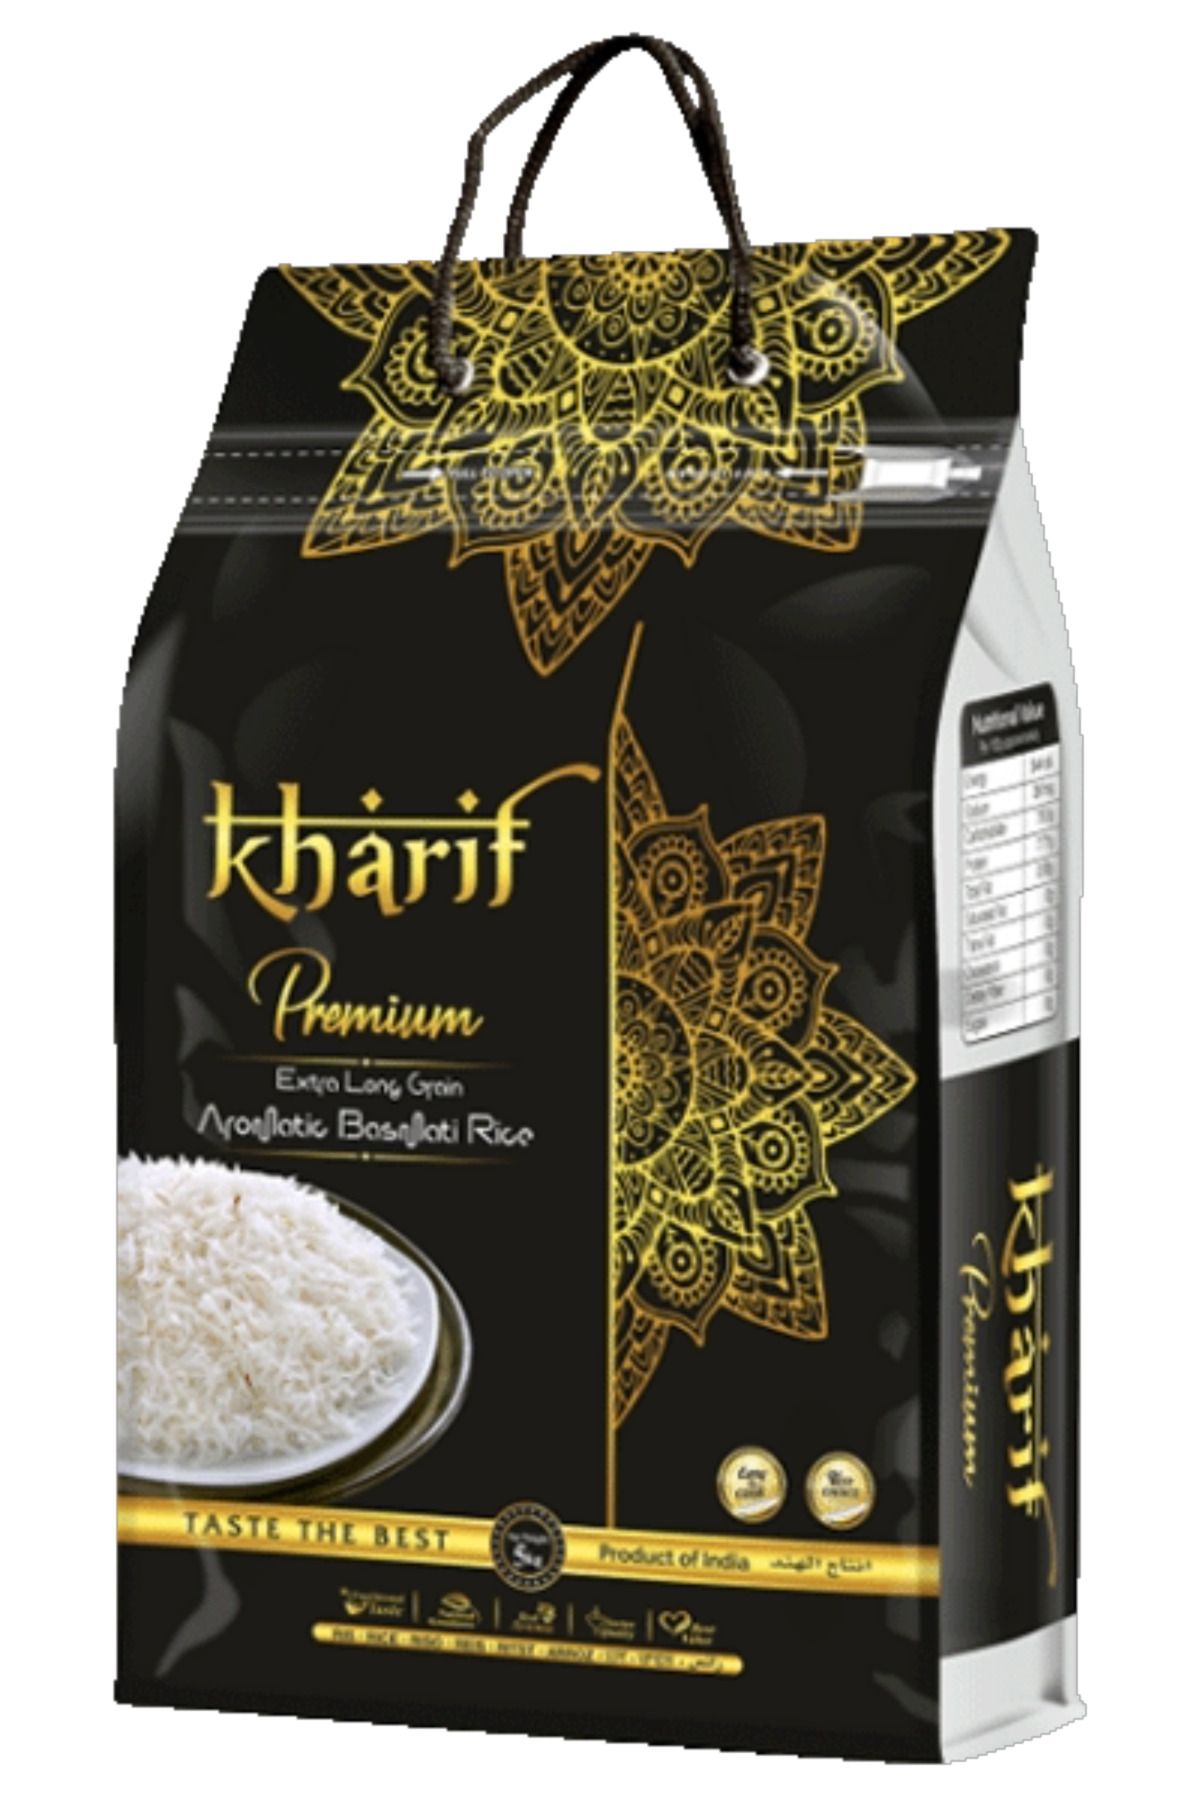 Kharif Basmati Premium 5 kg